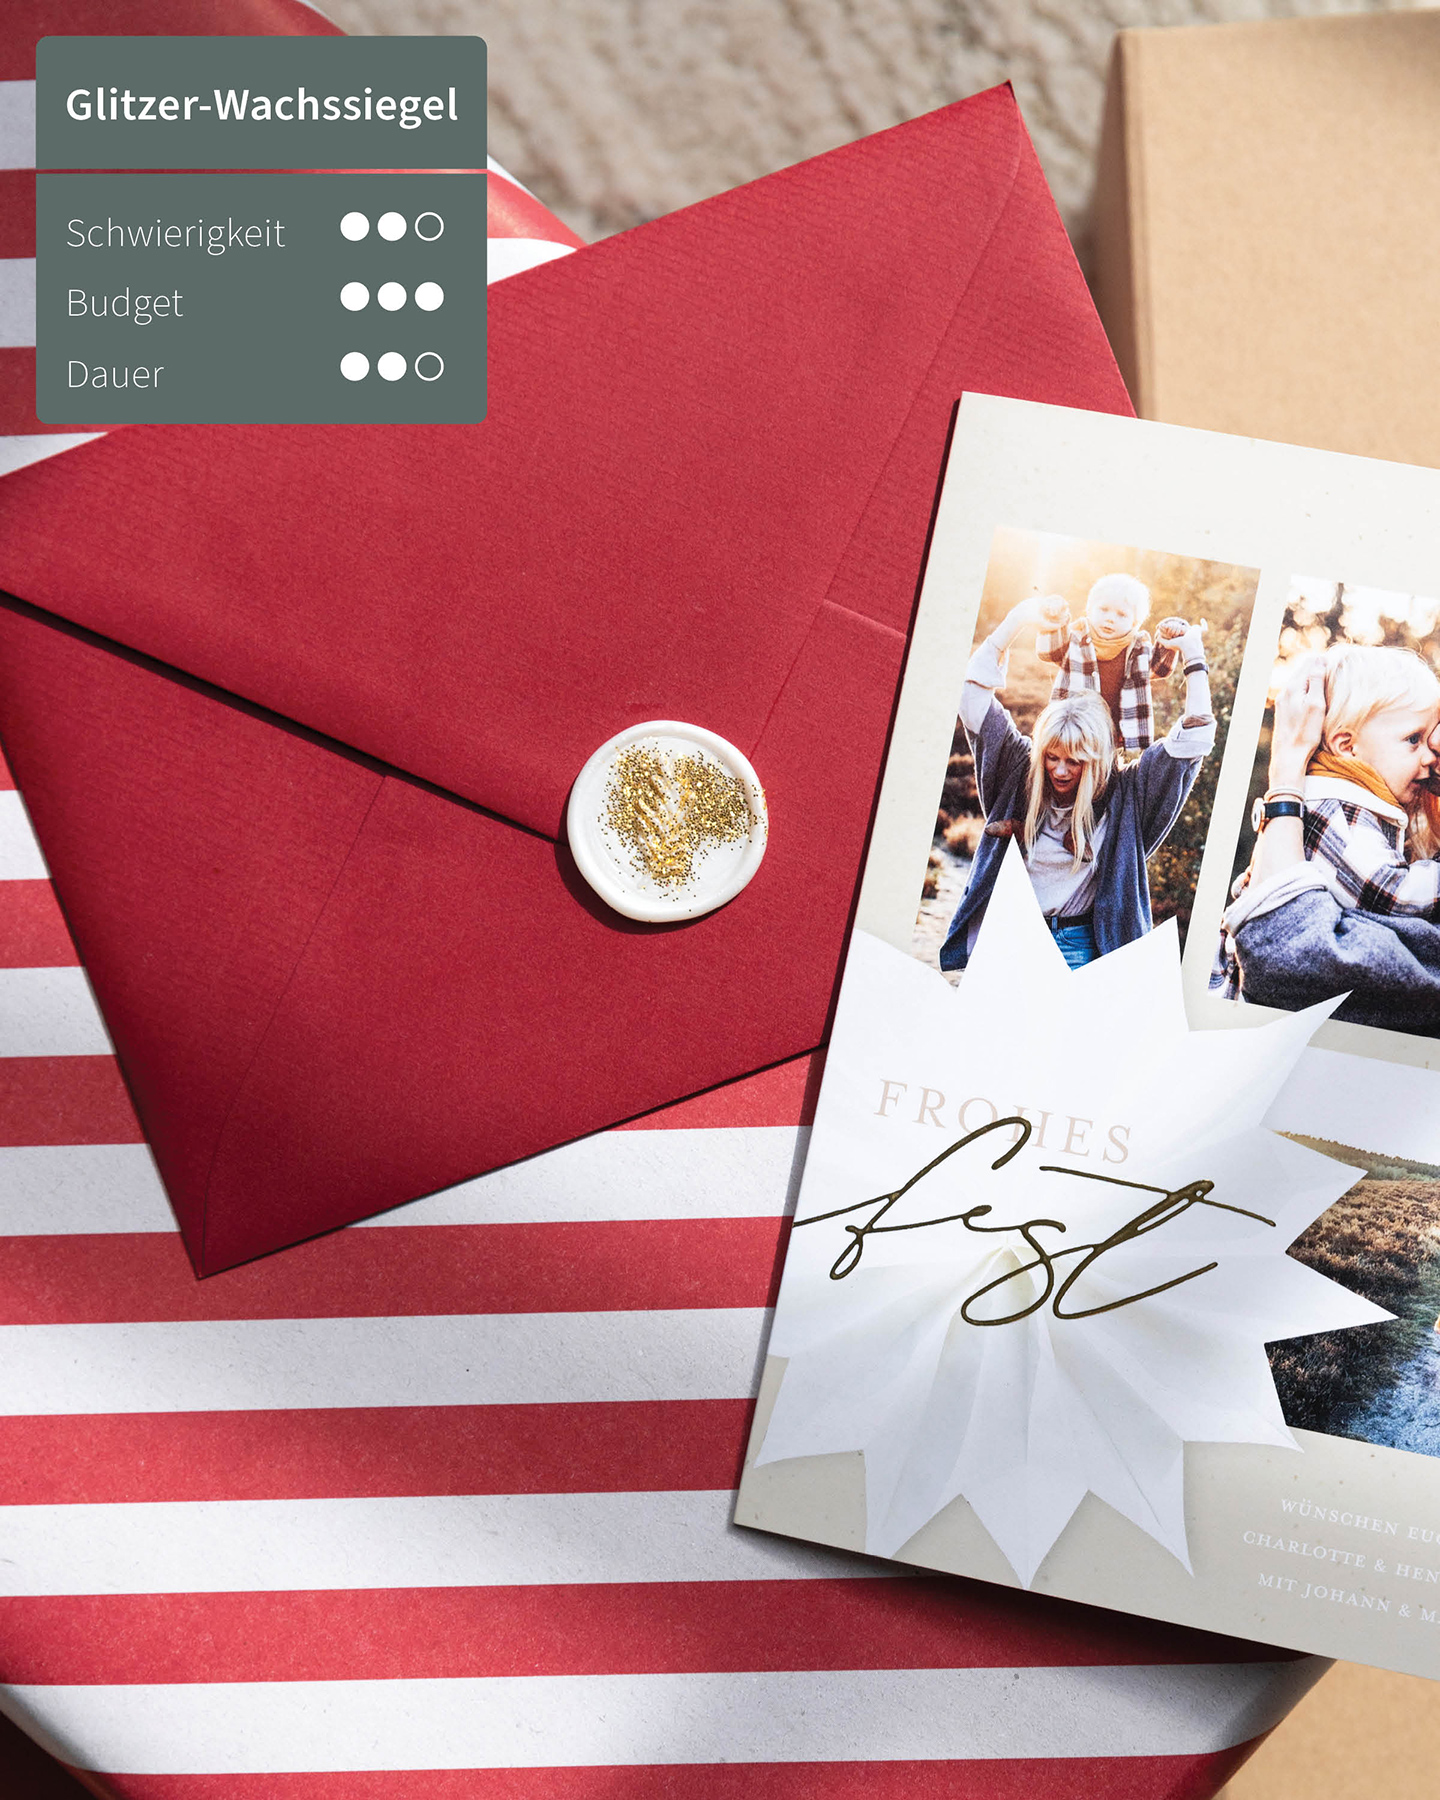 Weihnachtskarte liegt neben Briefumschlag auf dem Tisch. Der Umschlag ist mit einem Glitzer-Siegel verschlossen.